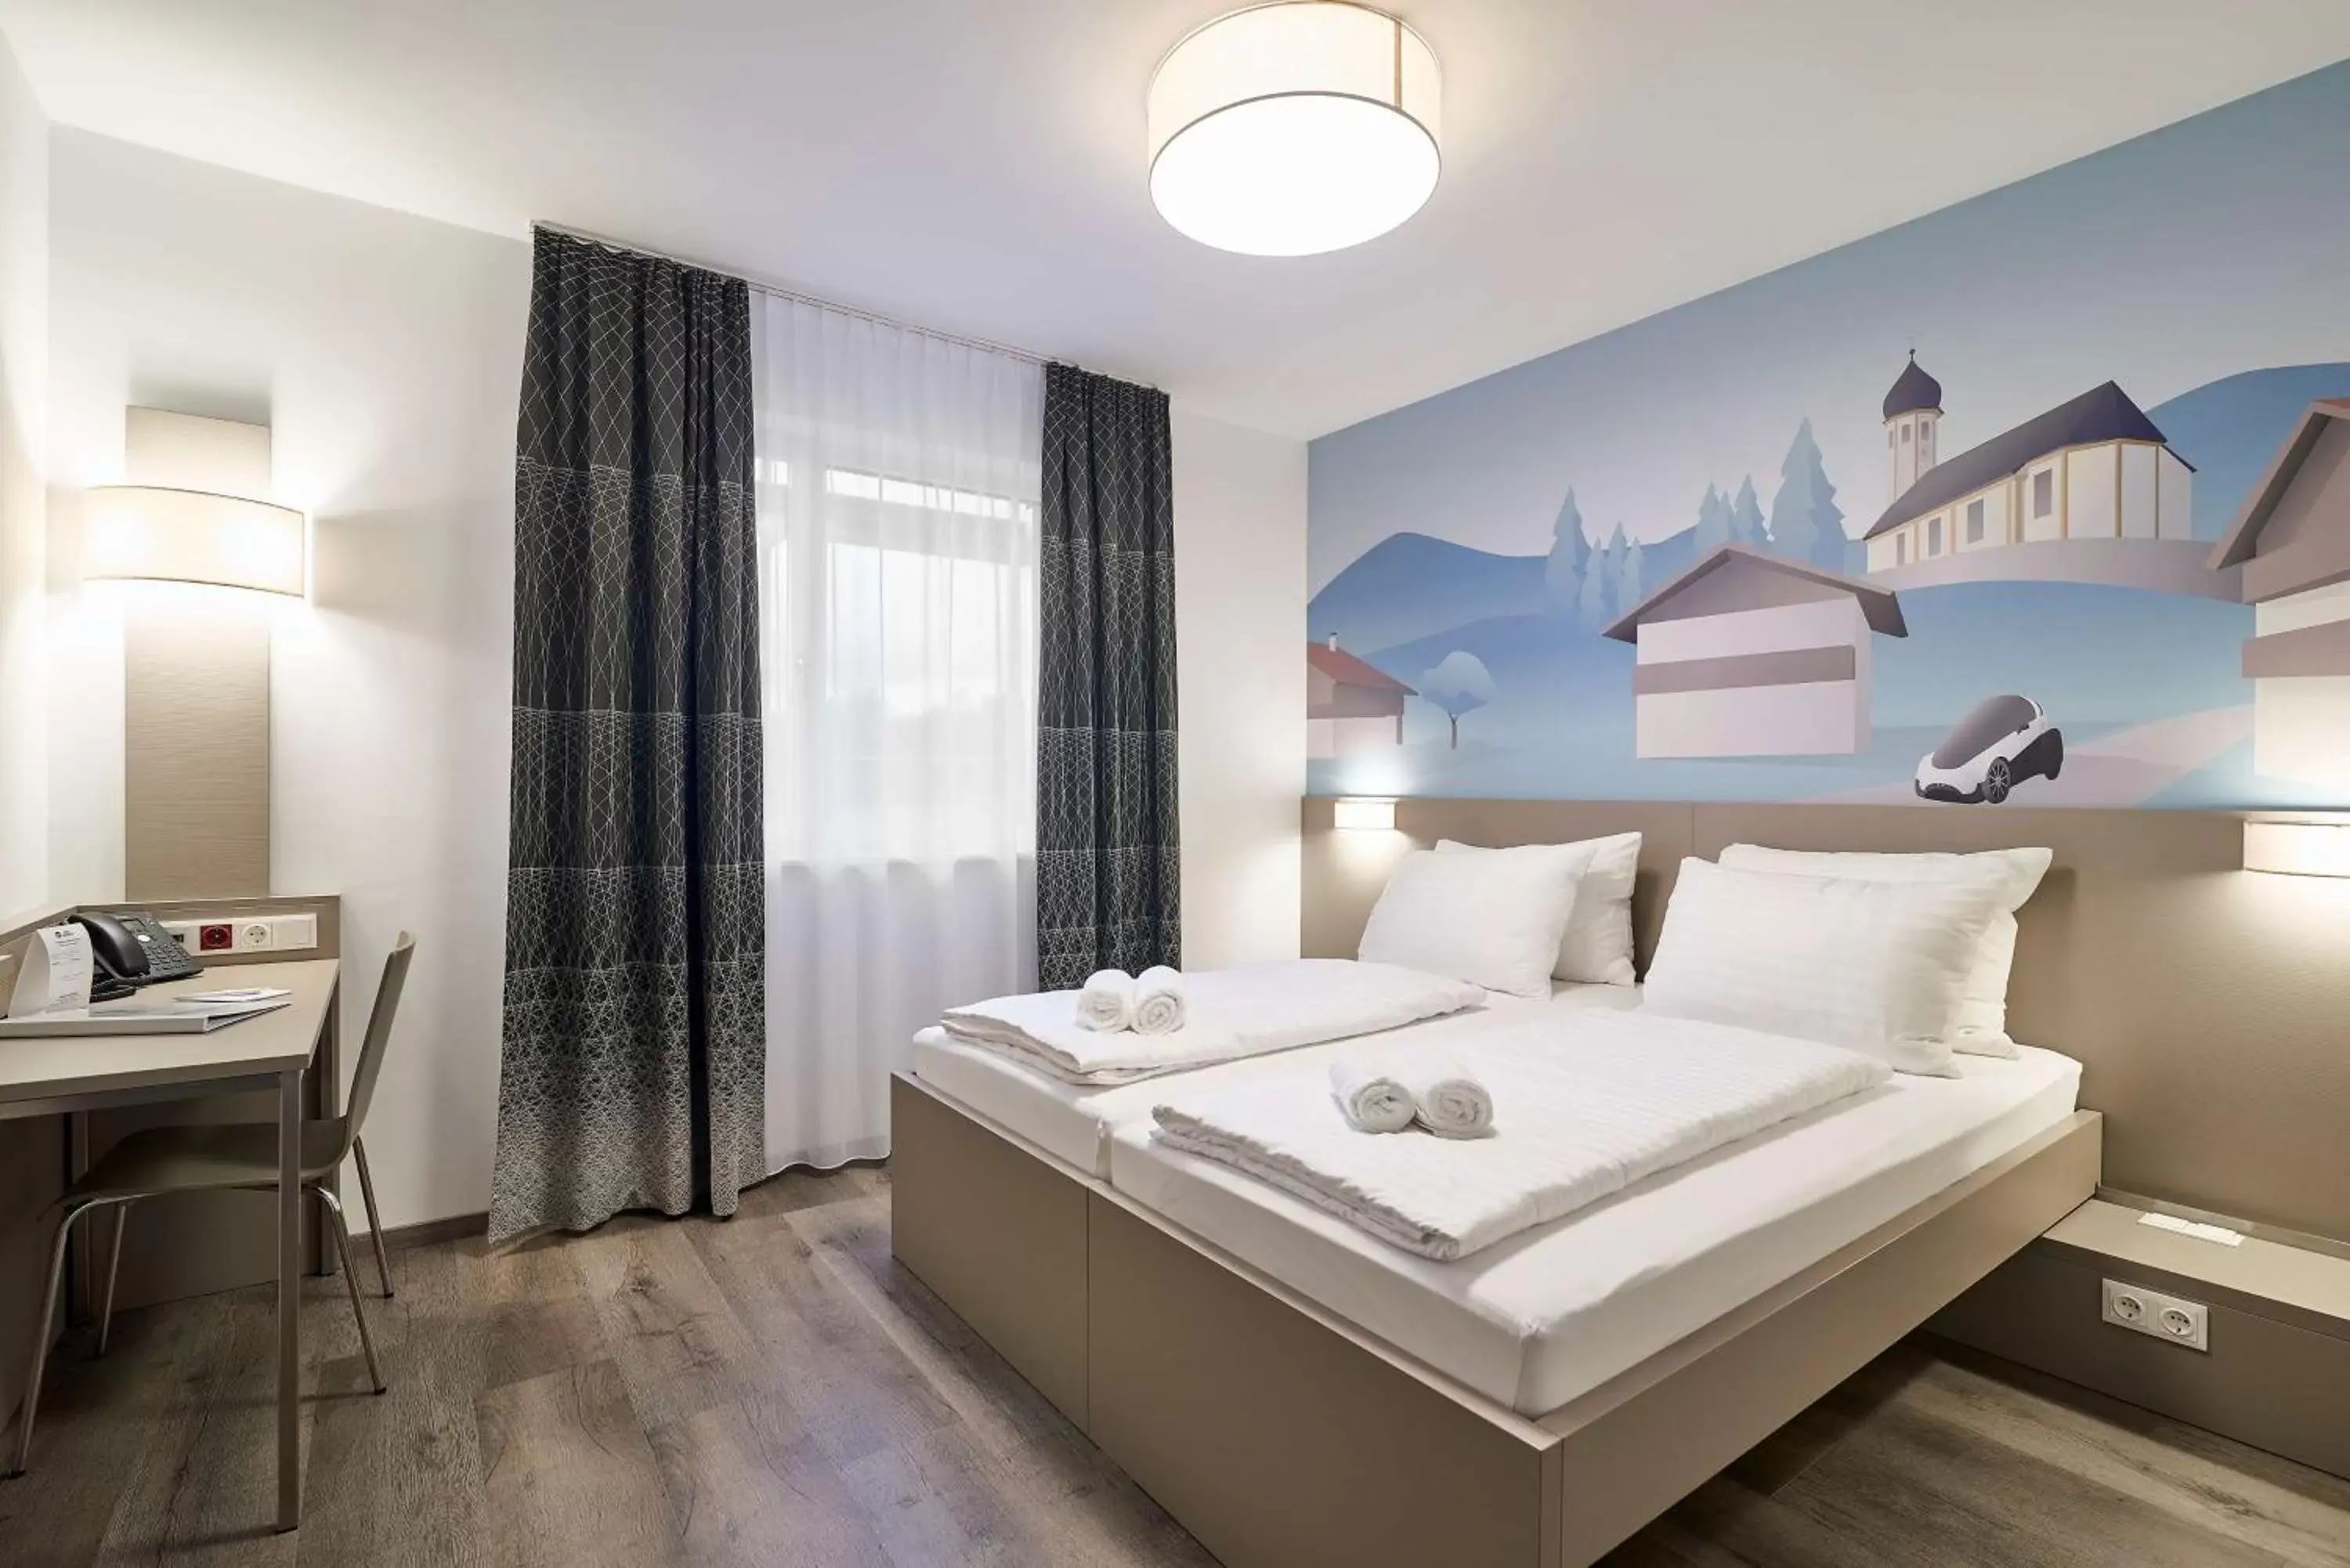 Photo of the whole room, Bed in Best Western Hotel Kiefersfelden